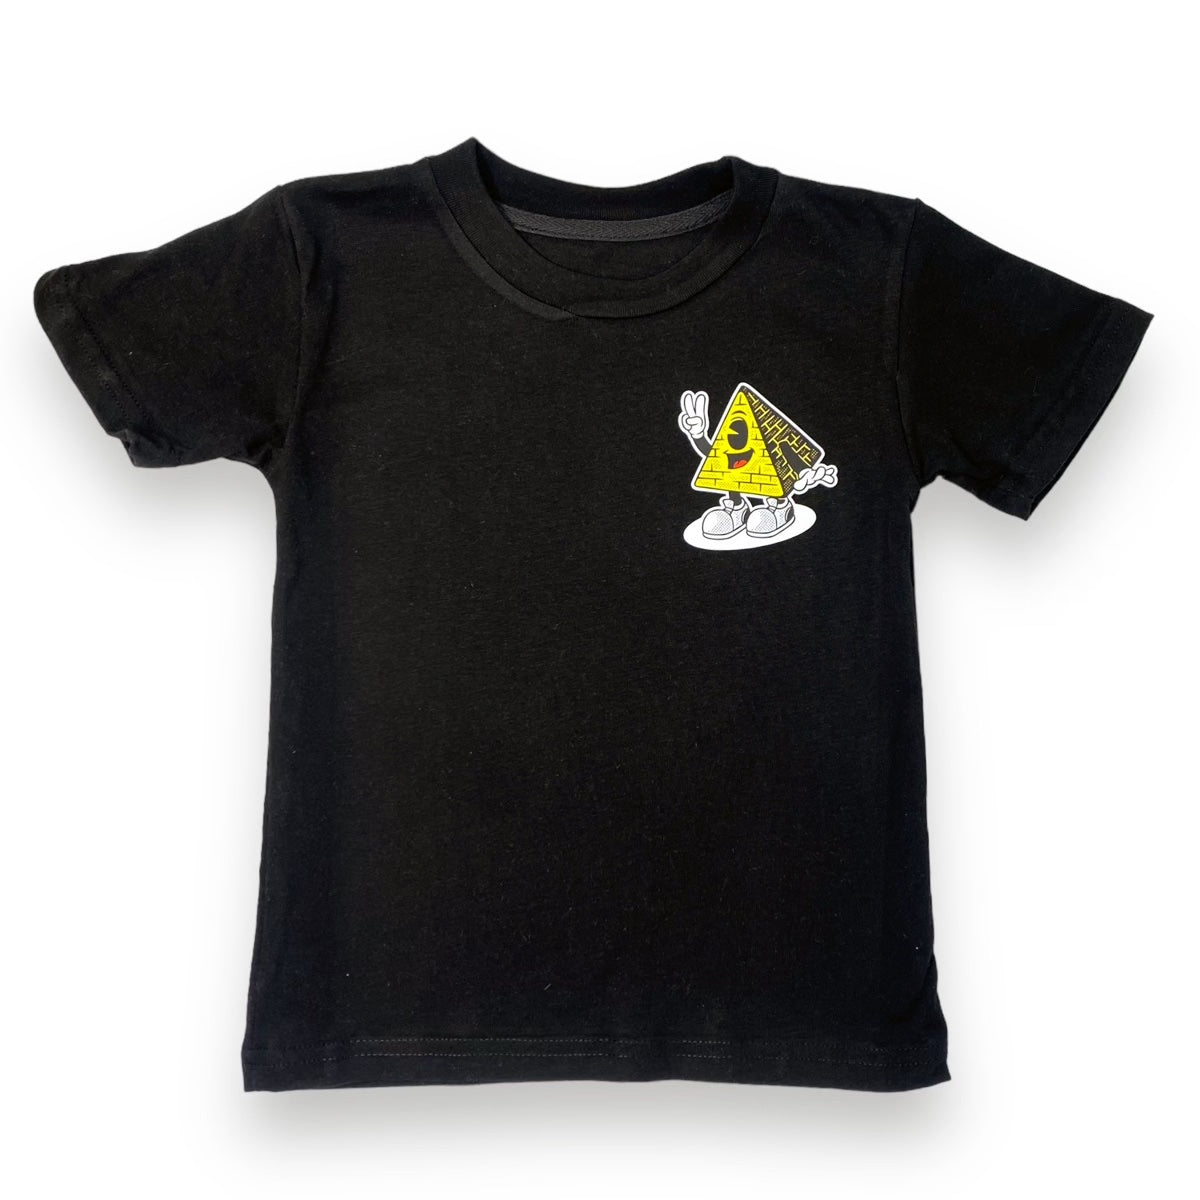 Illumi-Naughty T-shirt (Black)